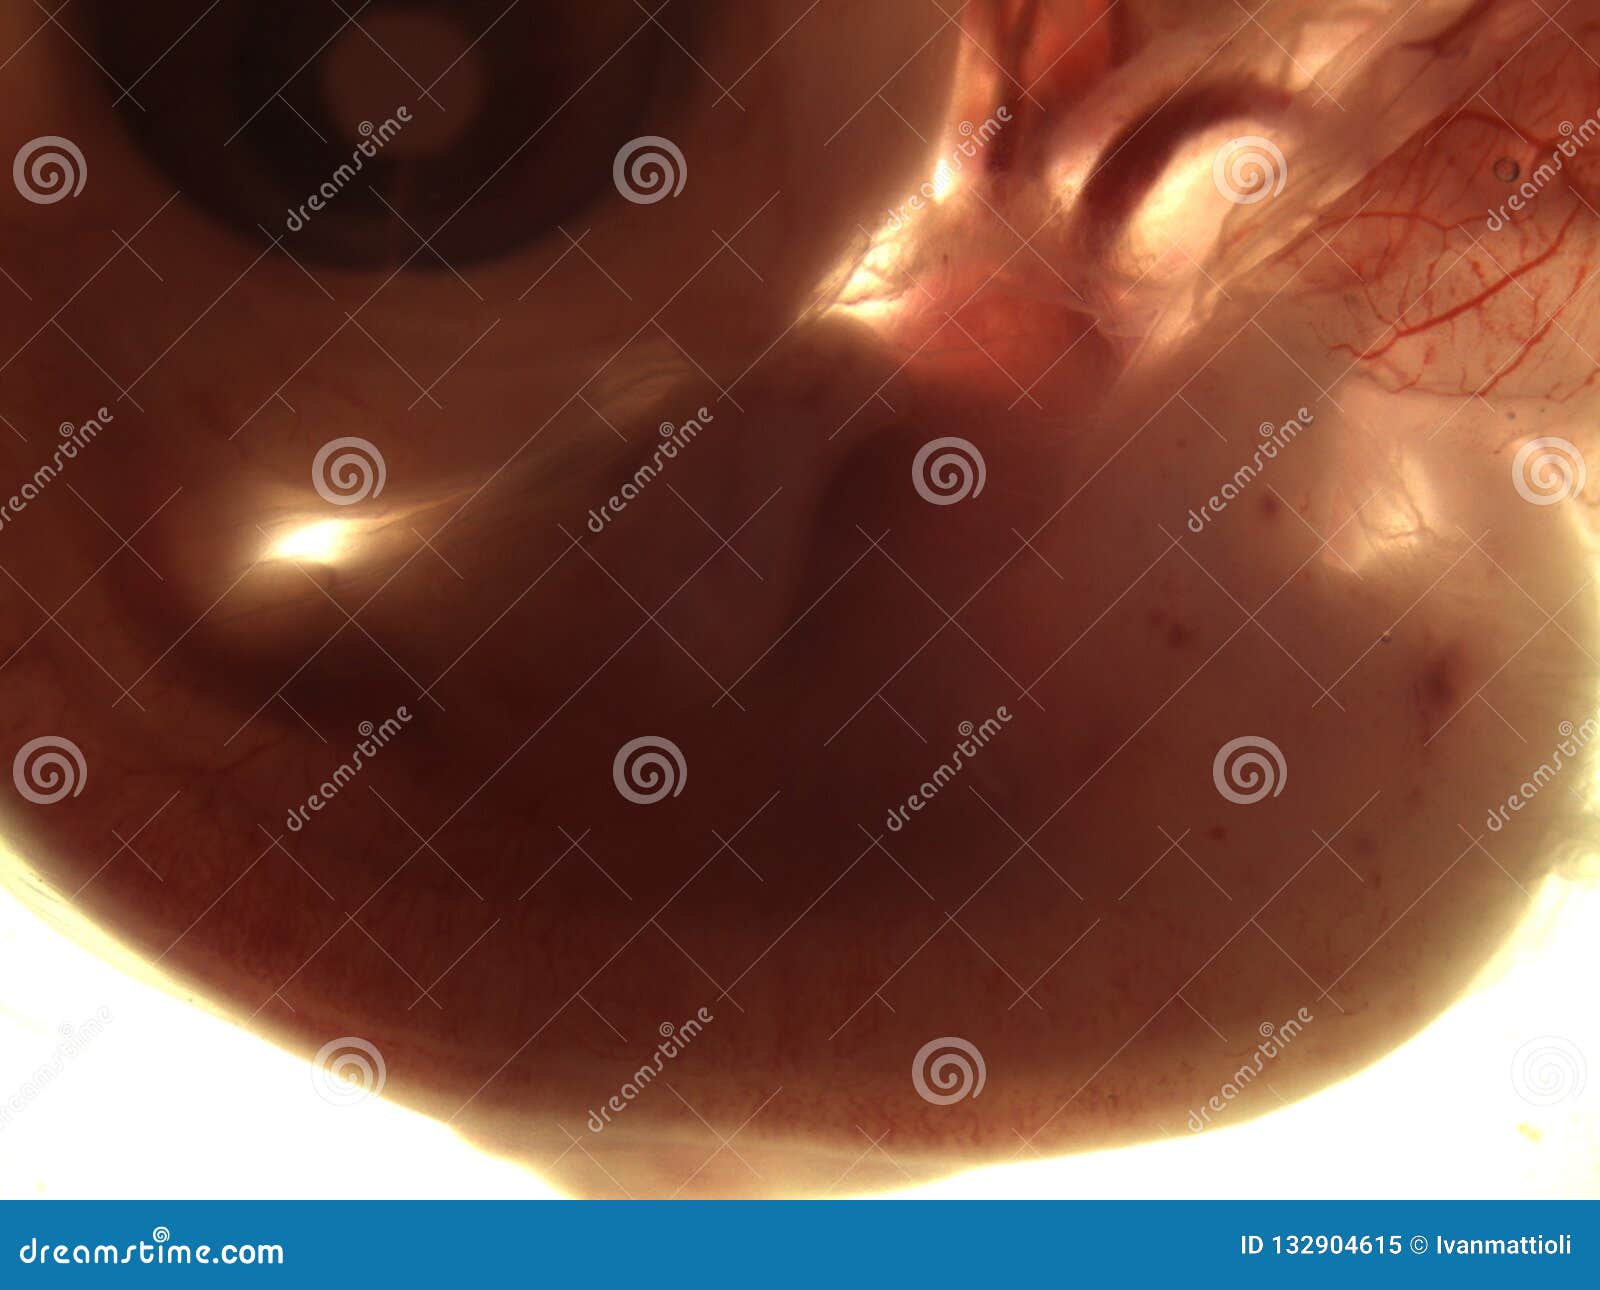 胚胎发育-智汇三农